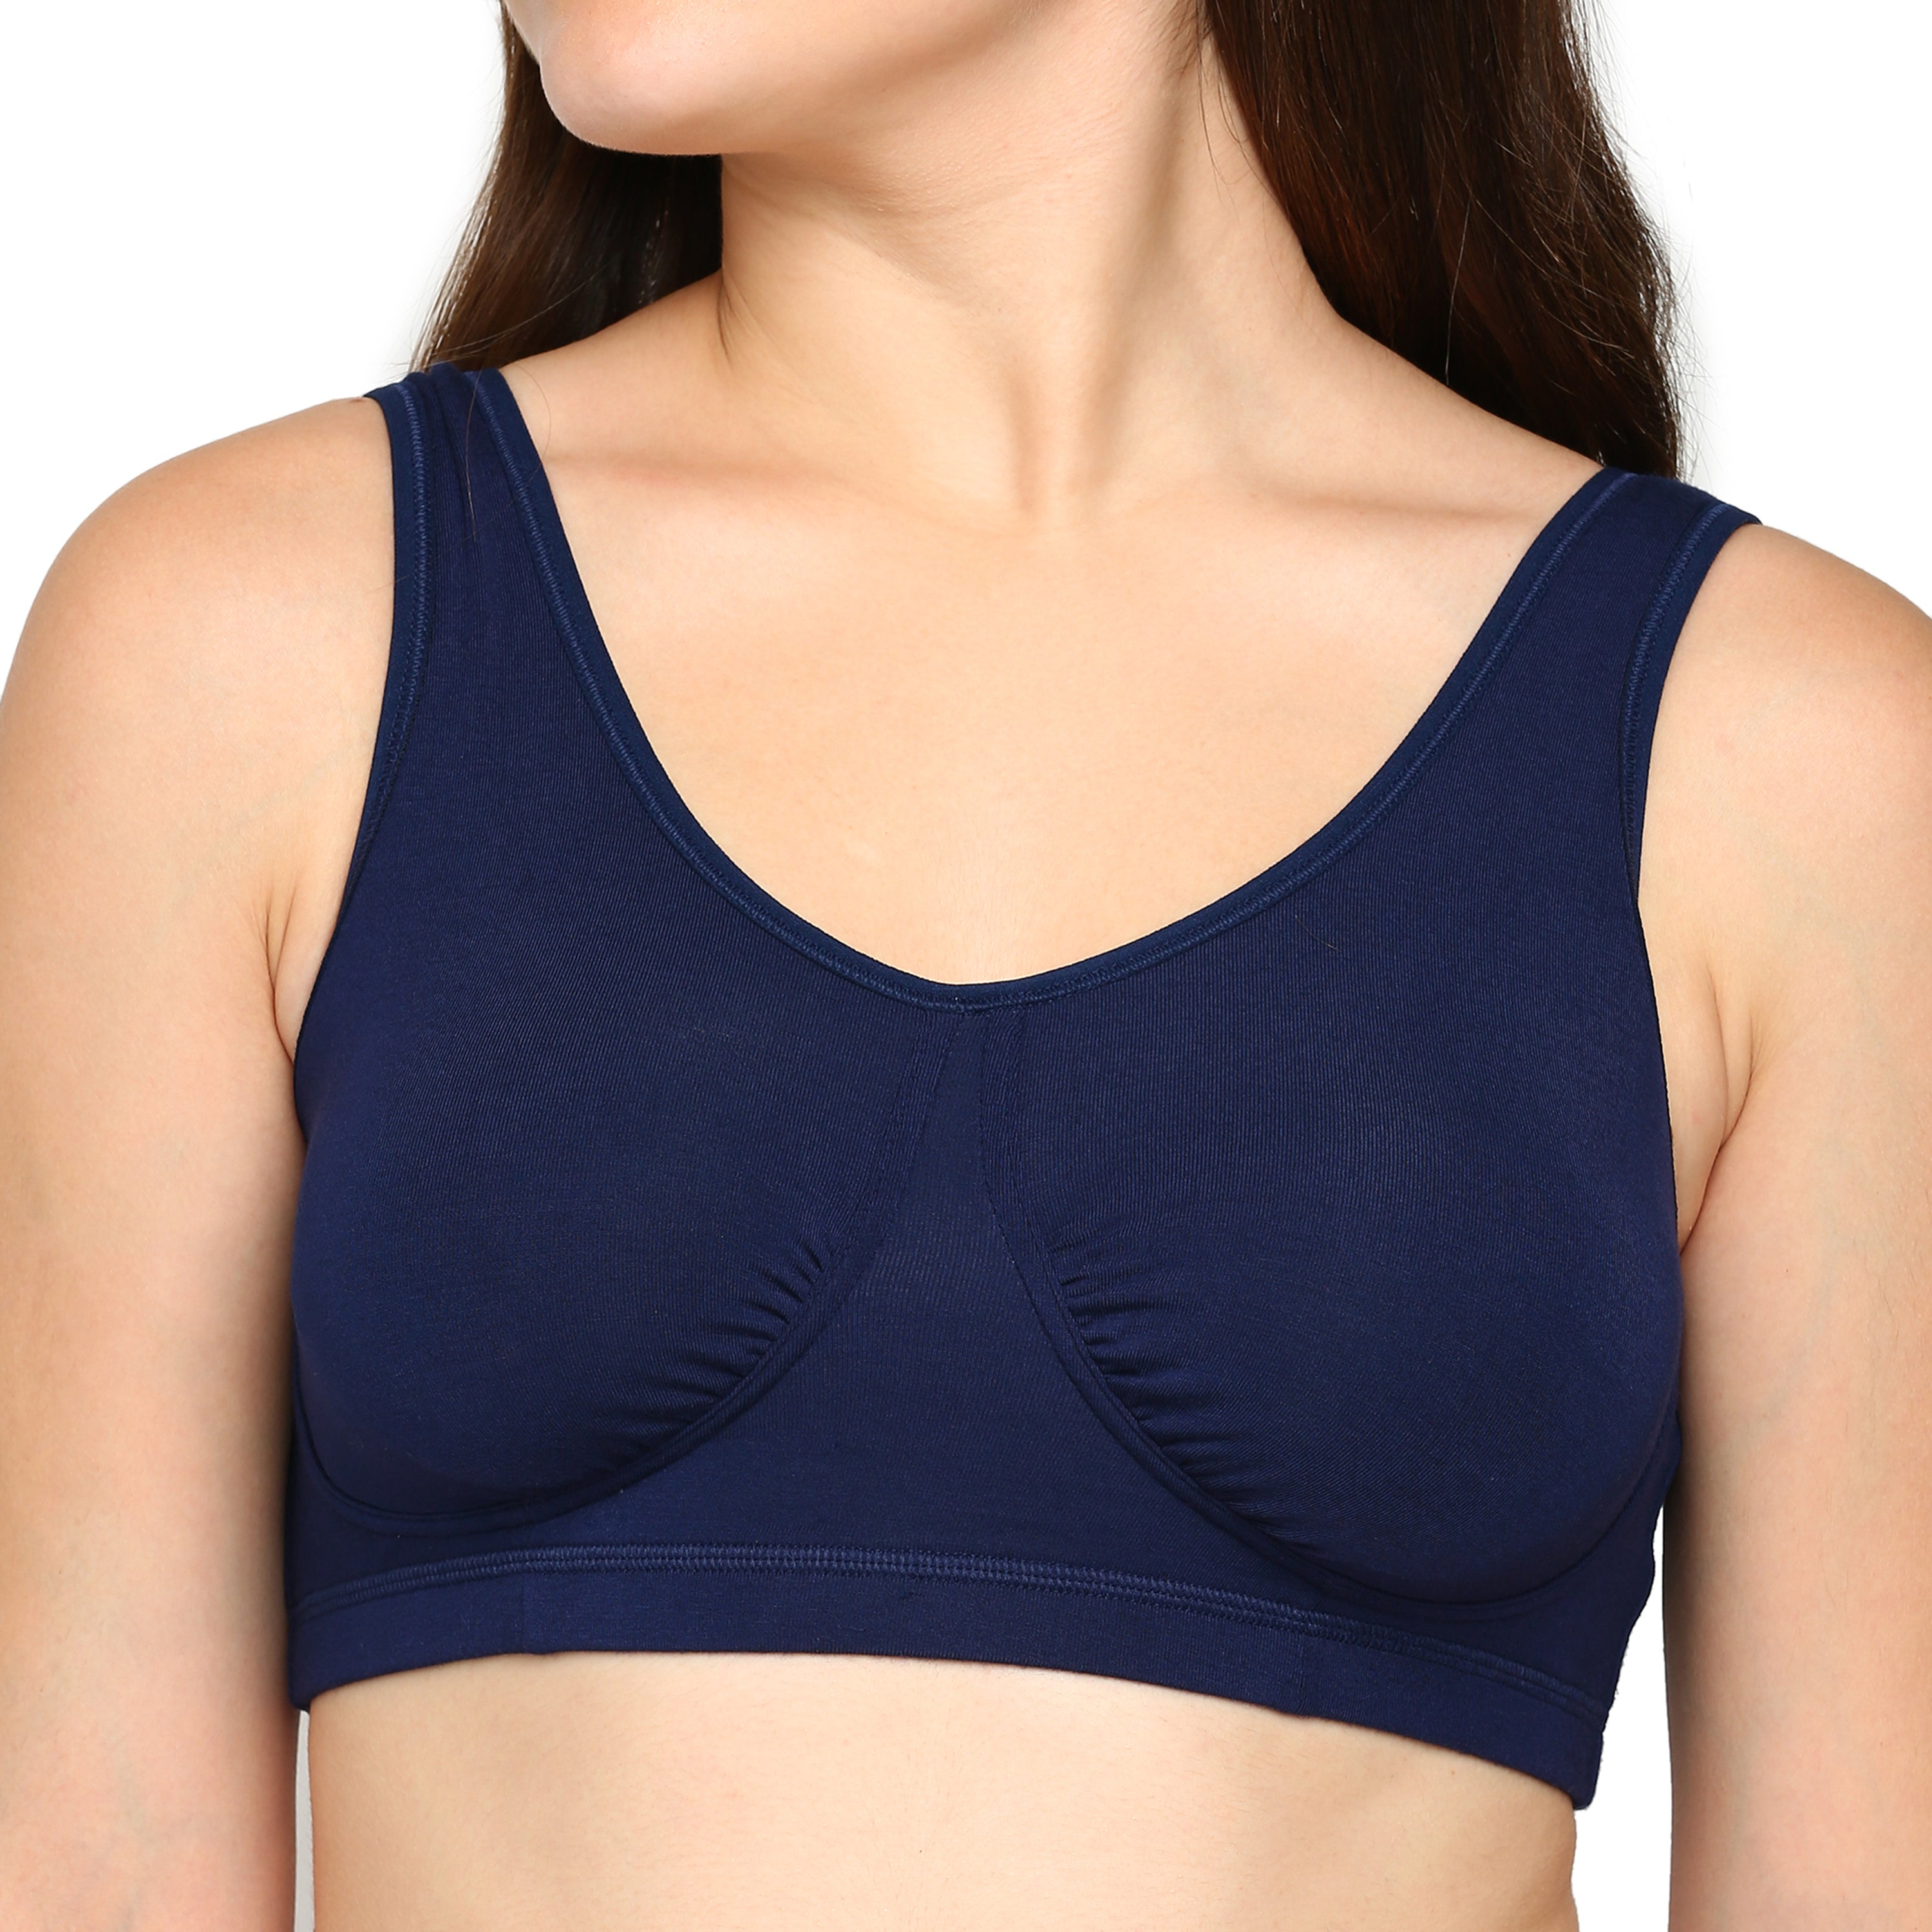 blossom-night bra-navy blue2-Slip-On-utility based bra